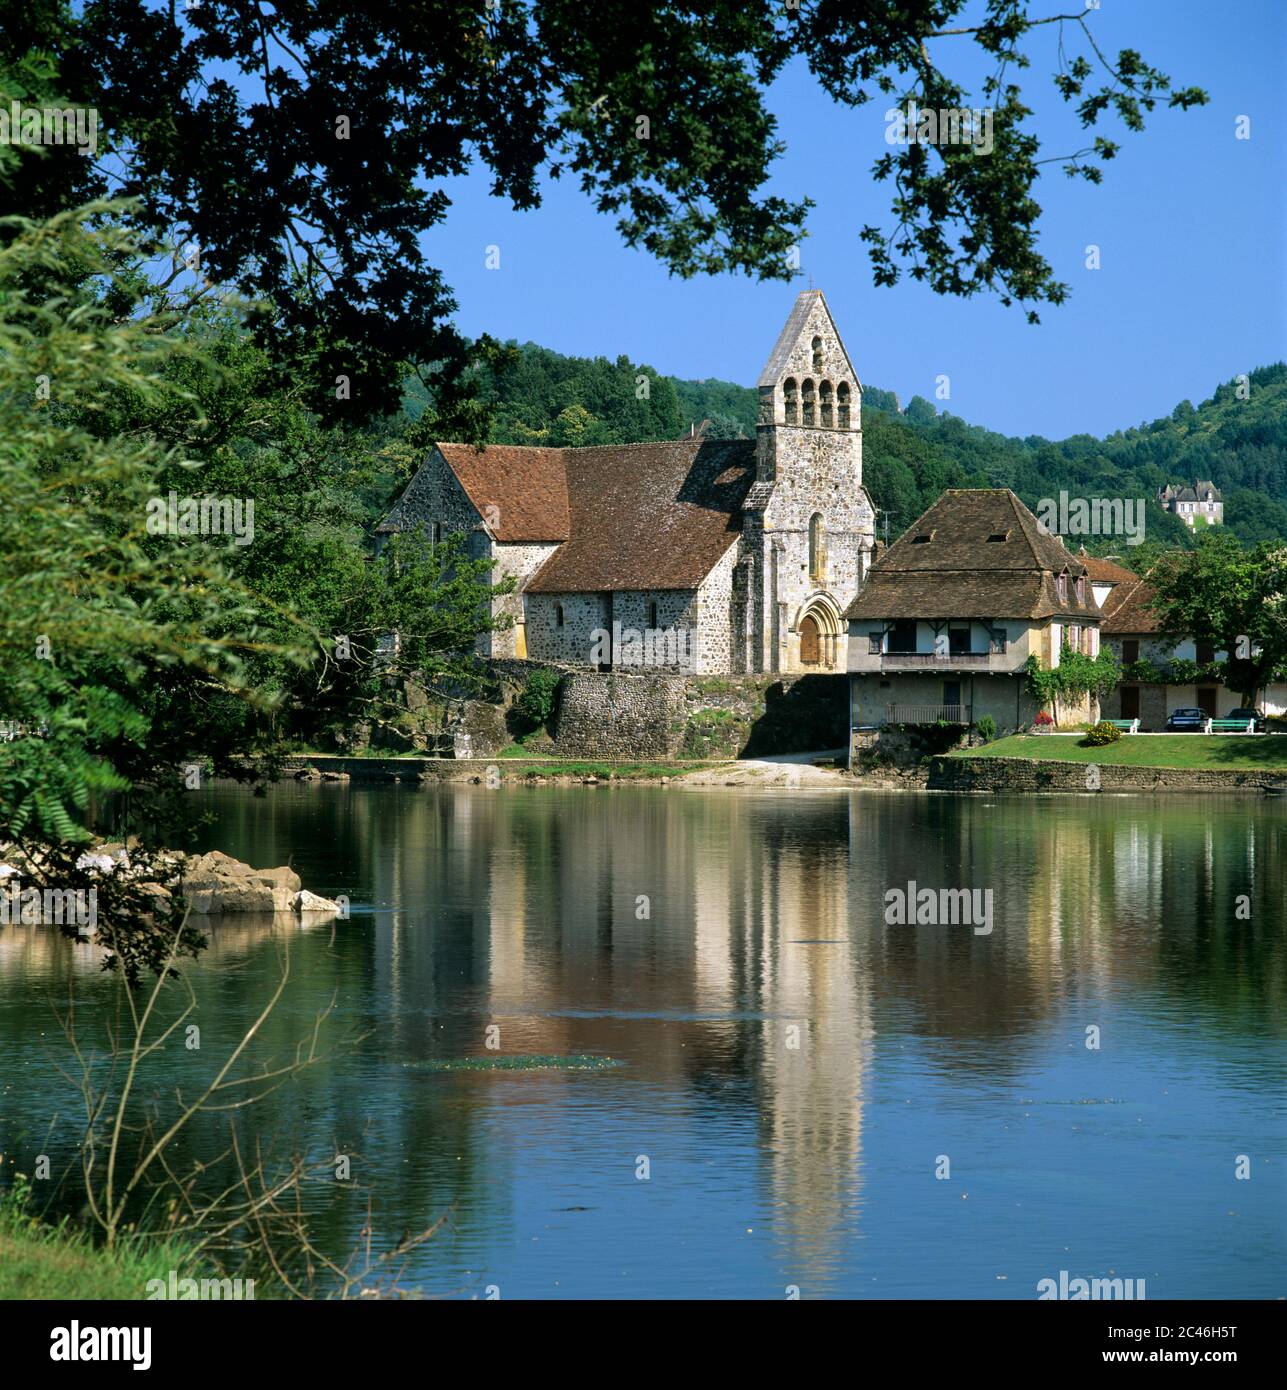 La Chapelle des Penitents on banks of the River Dordogne, Beaulieu-Sur-Dordogne, Limousin, France Stock Photo